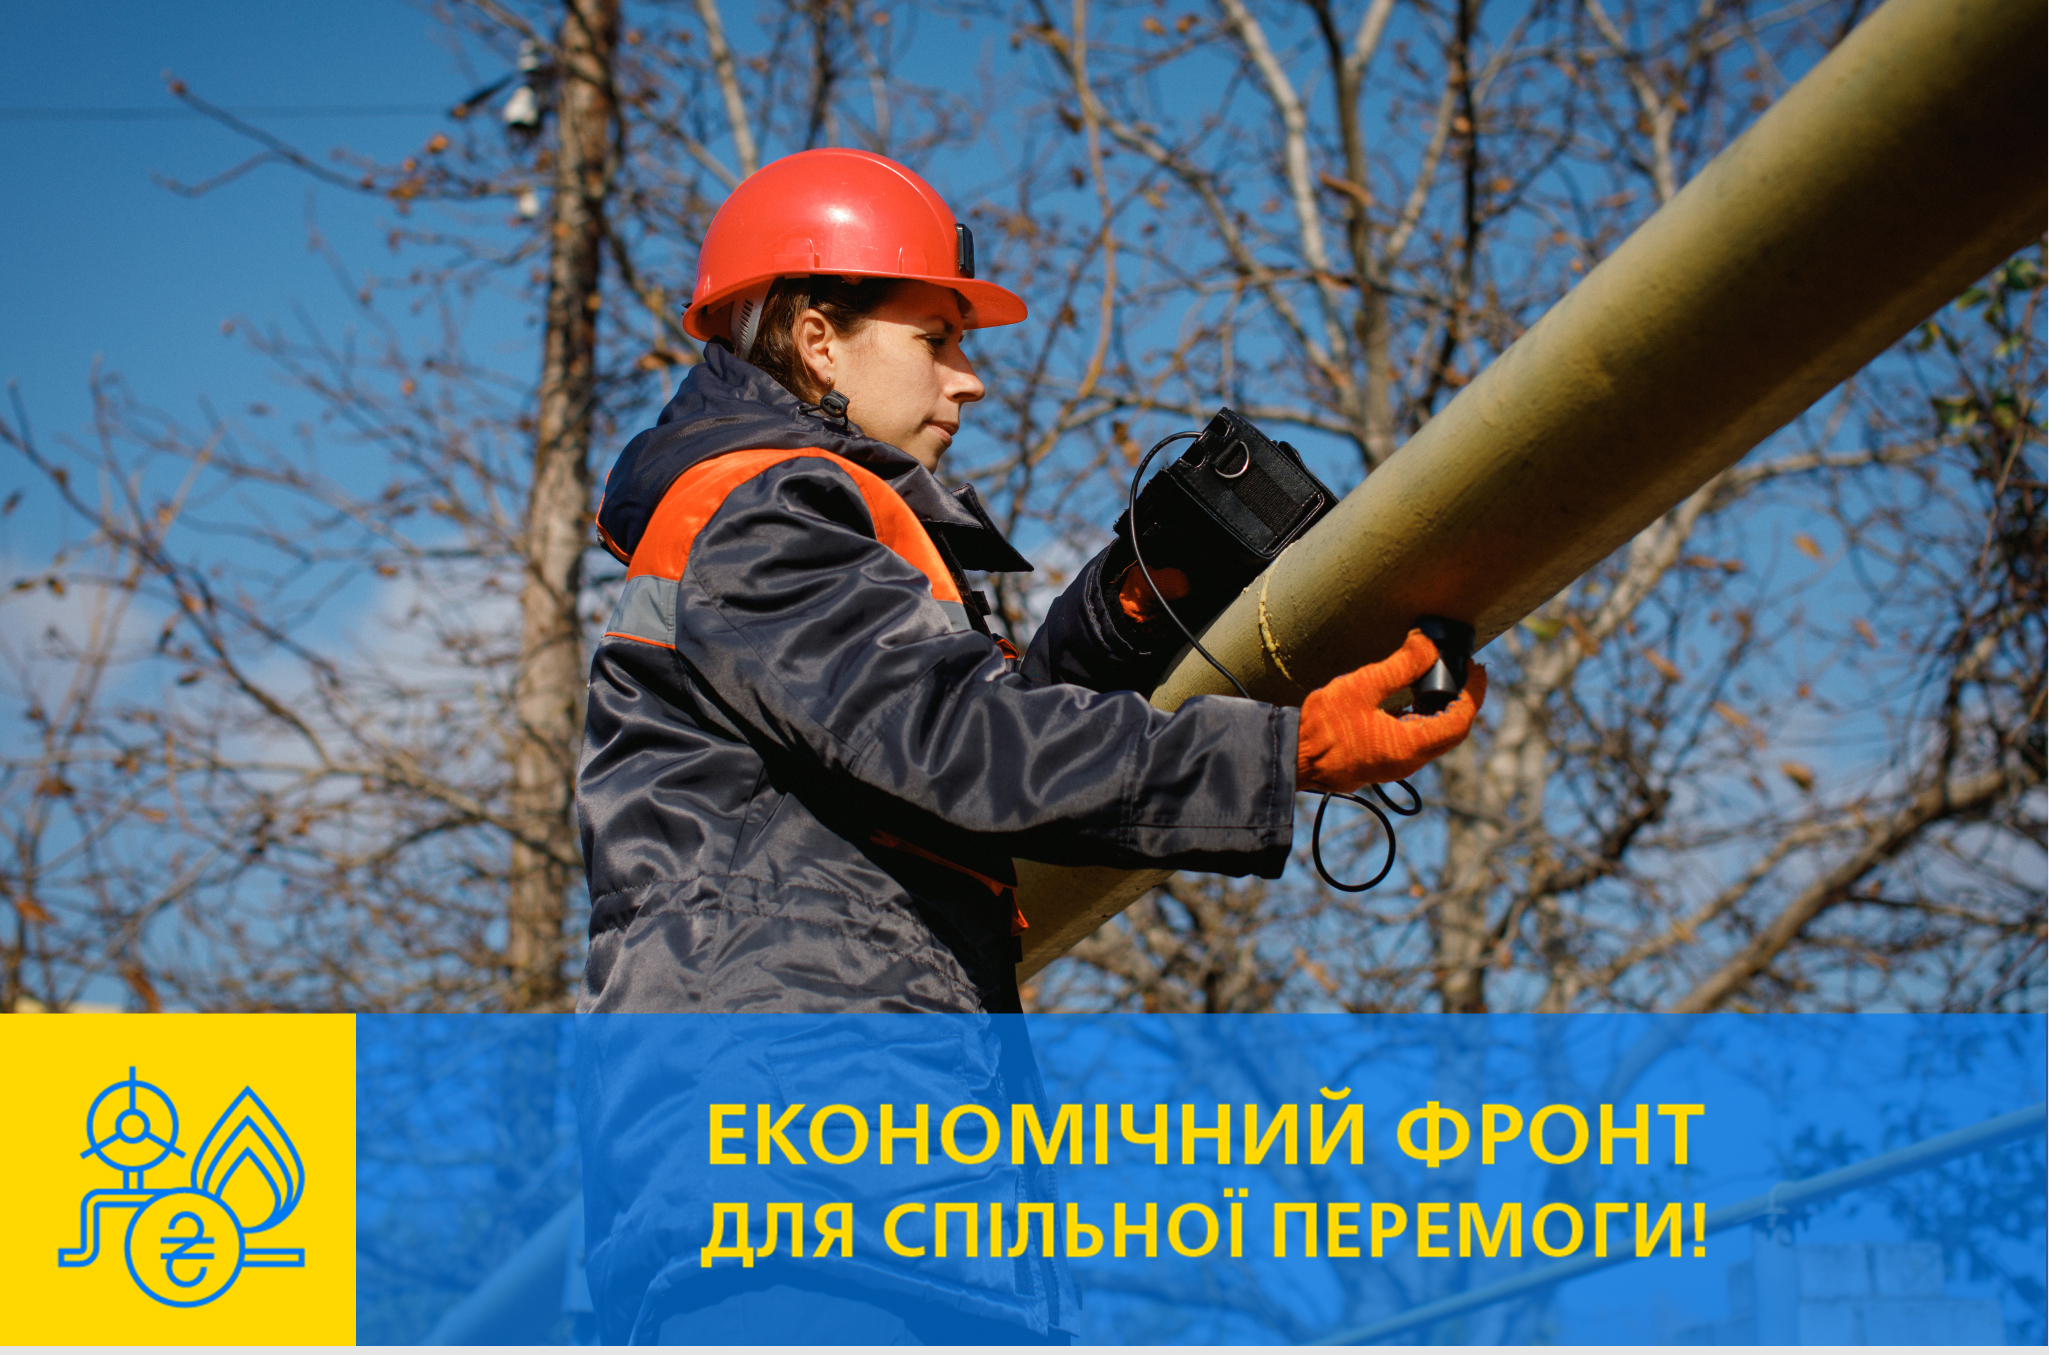 Сплачуйте за розподіл газу - підтримуйте економіку України